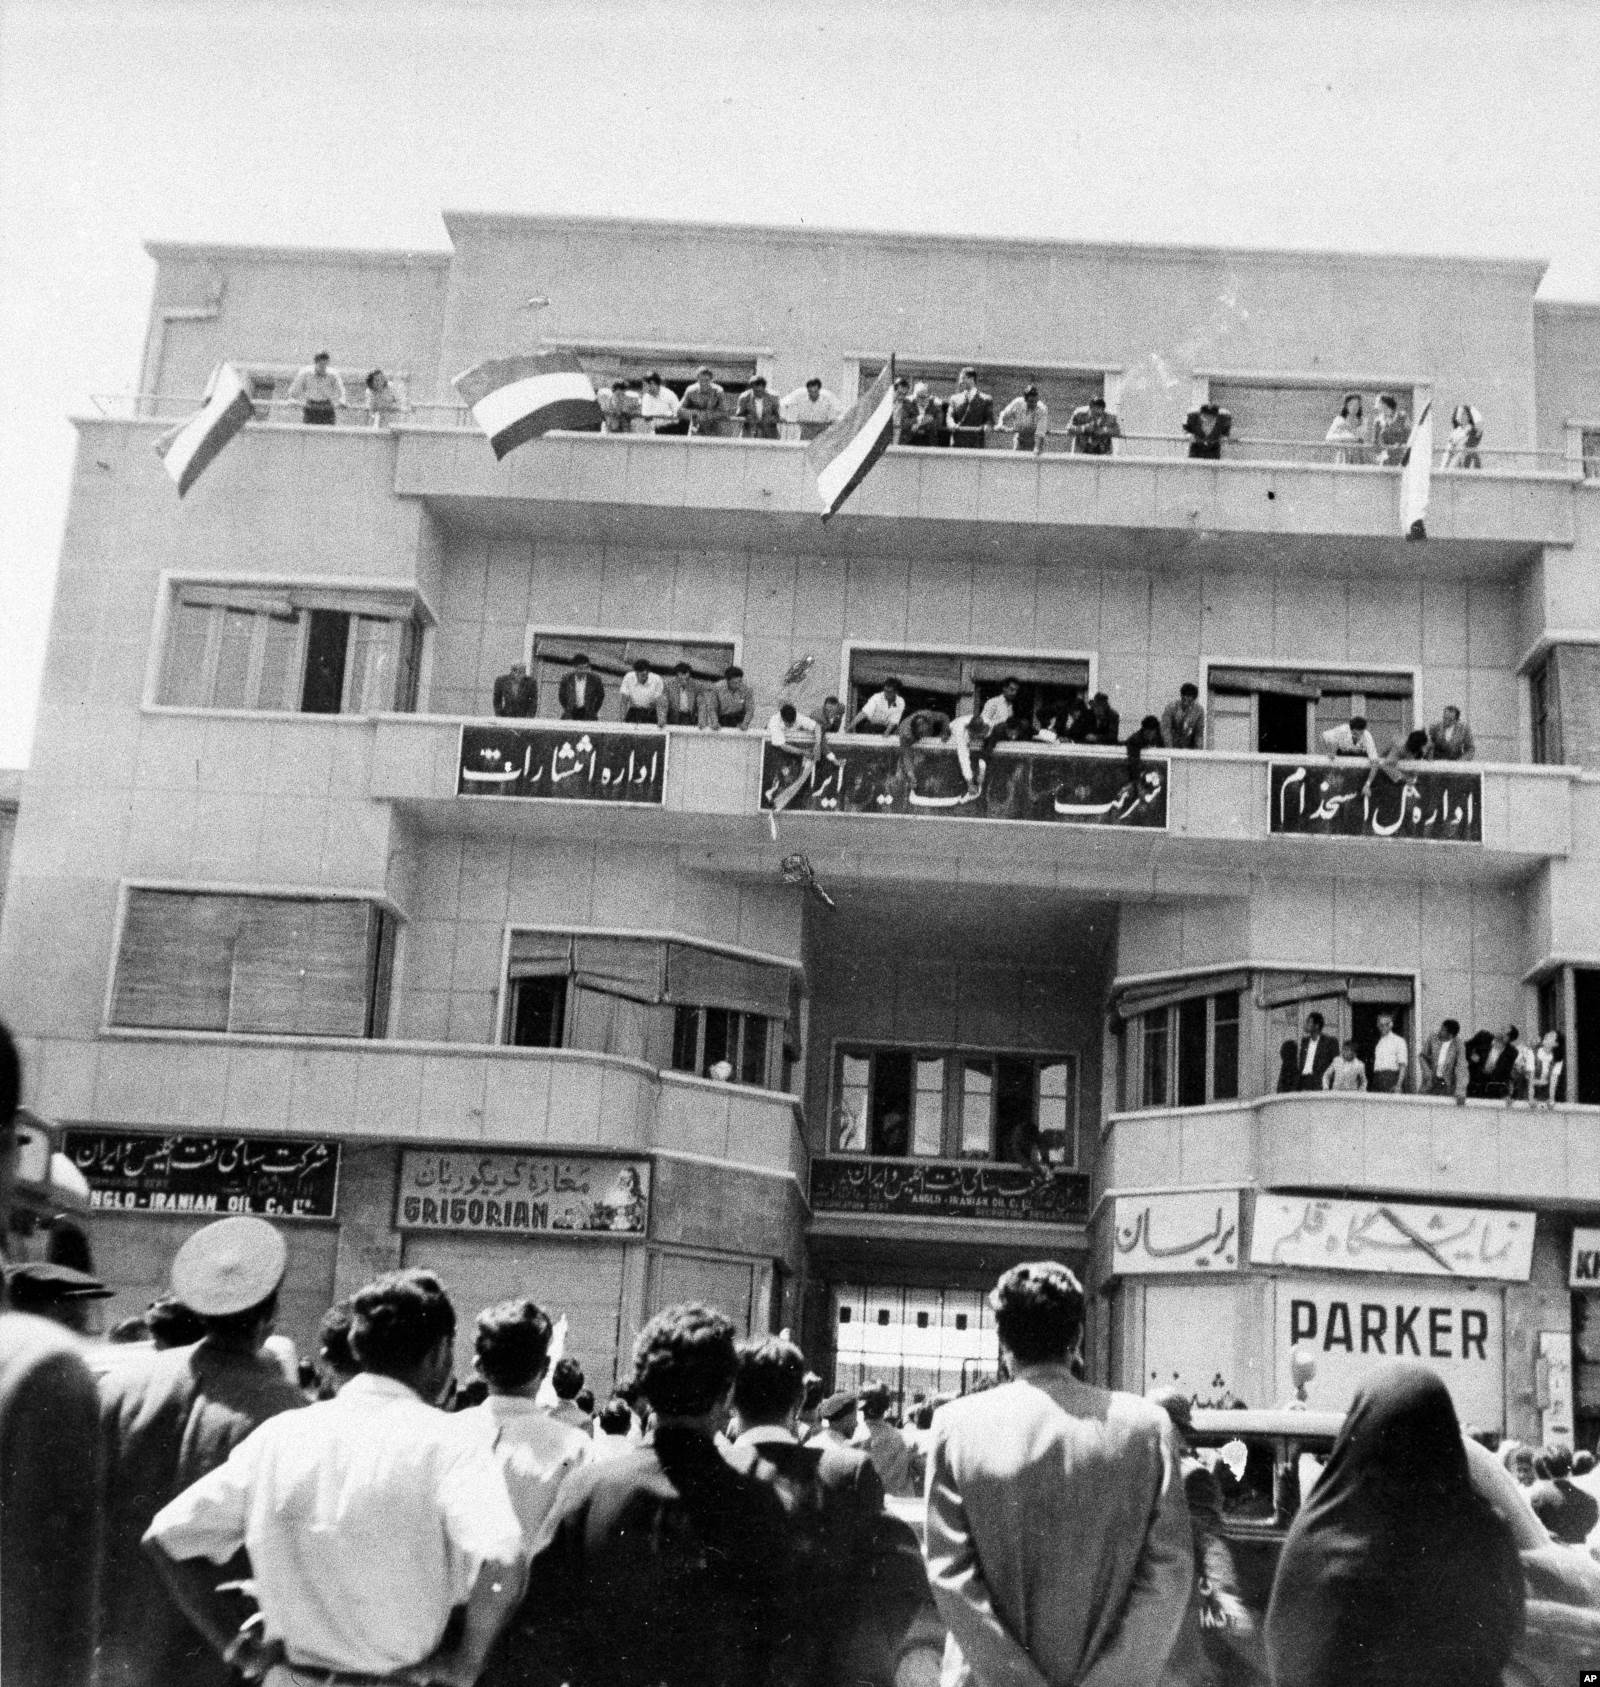 Протестующие на балконах здания информационного центра Англо-персидской нефтяной компании. Они захватили здание и оторвали от знака английское название, оставив лишь написание вязью. 22 июня 1951